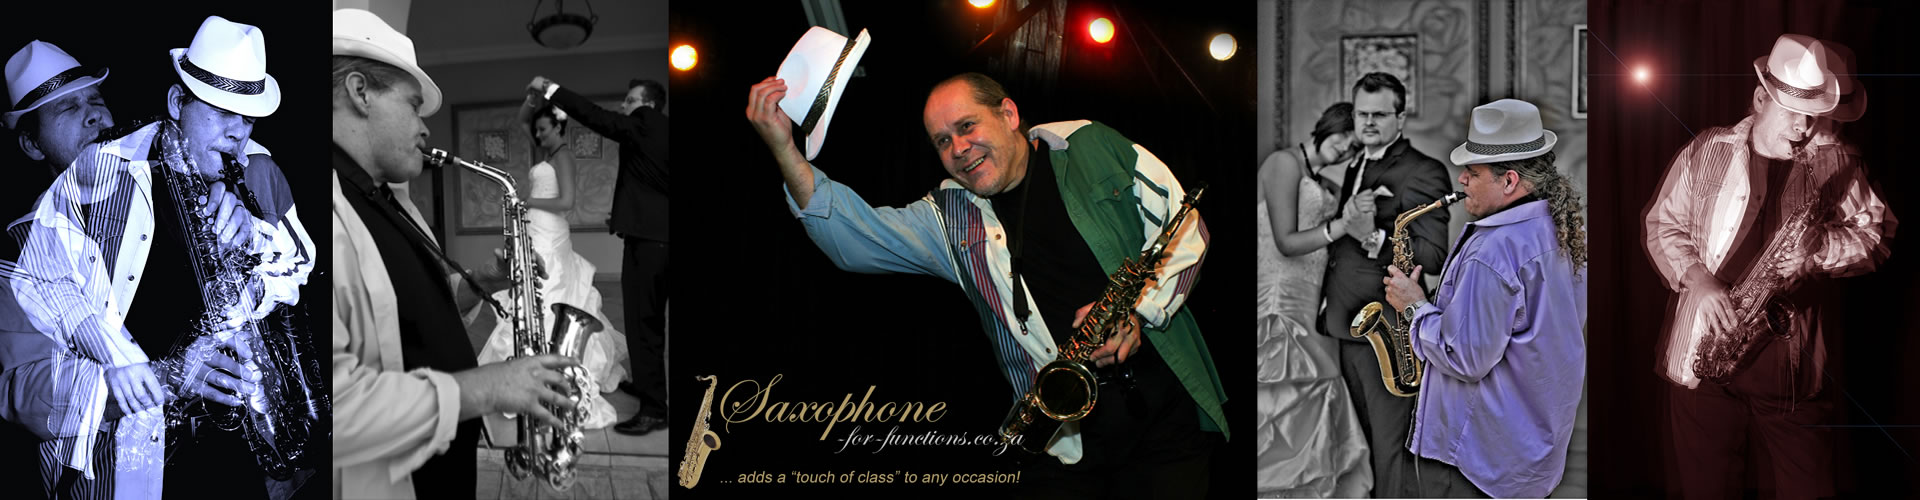 Saxophone For Weddings Slider 6